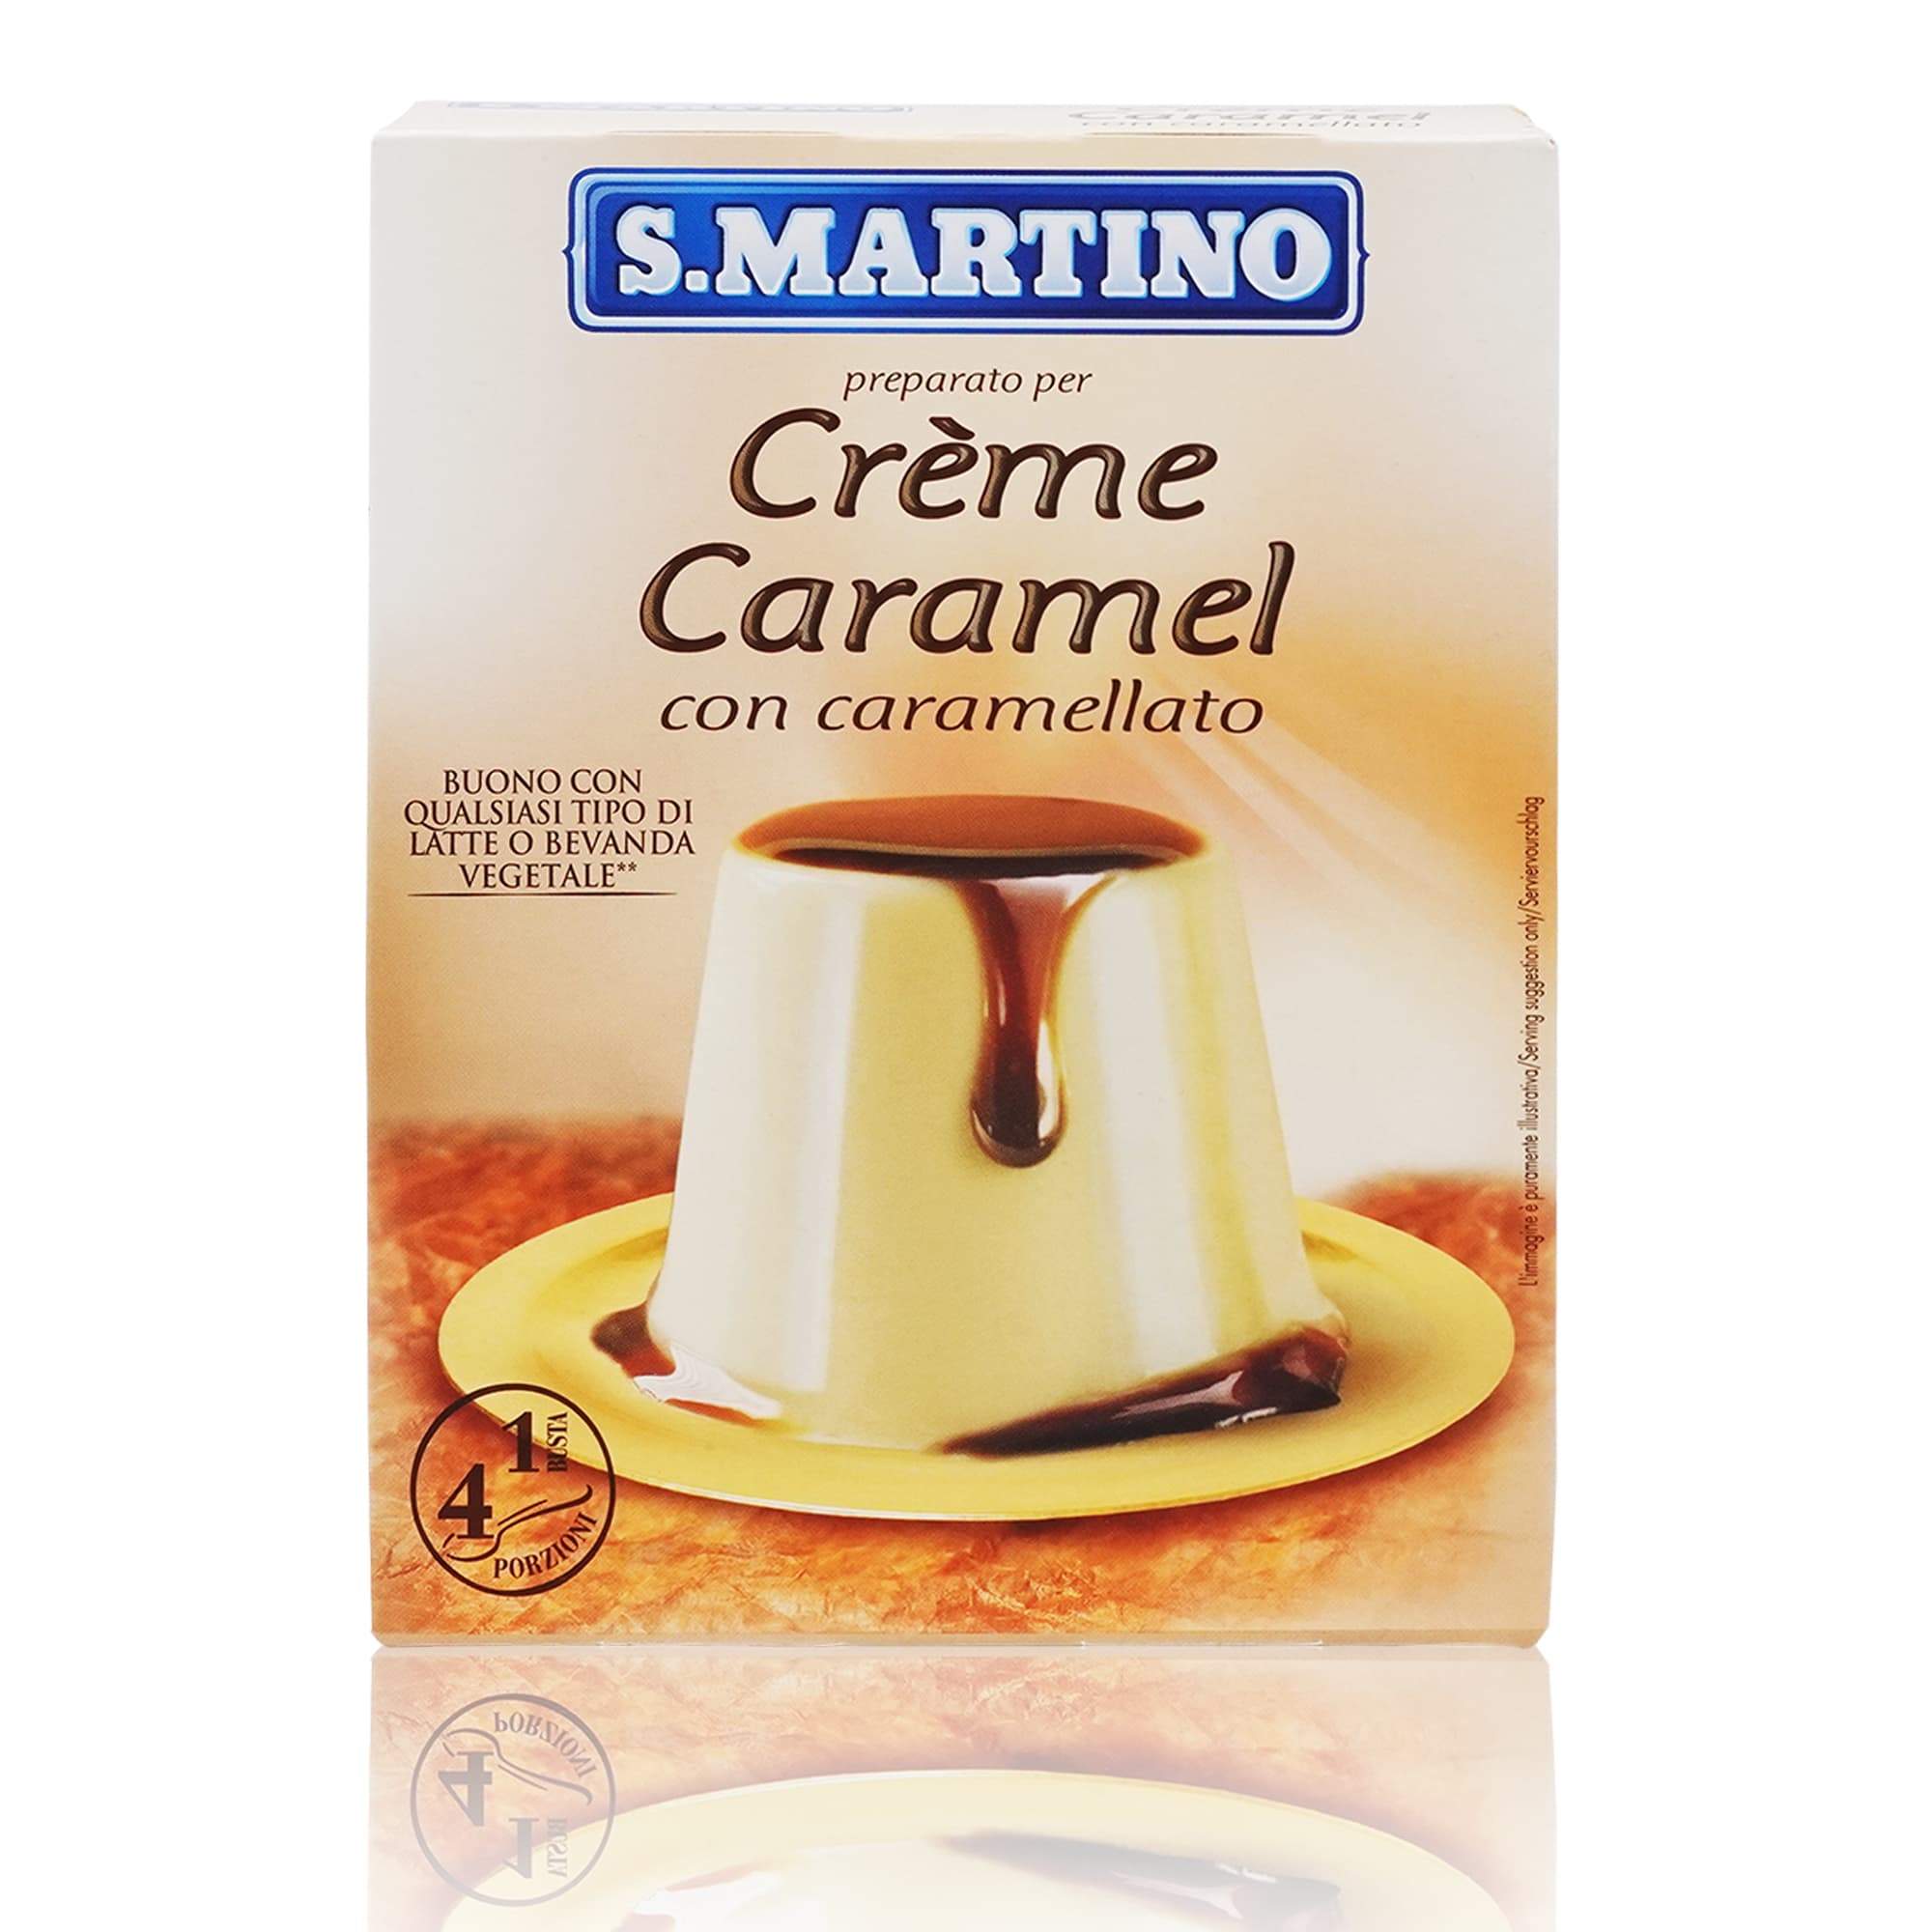 S.MARTINO Preparato Creme Caramel – Backmischung Creme Caramel - 0,095kg - italienisch-einkaufen.de